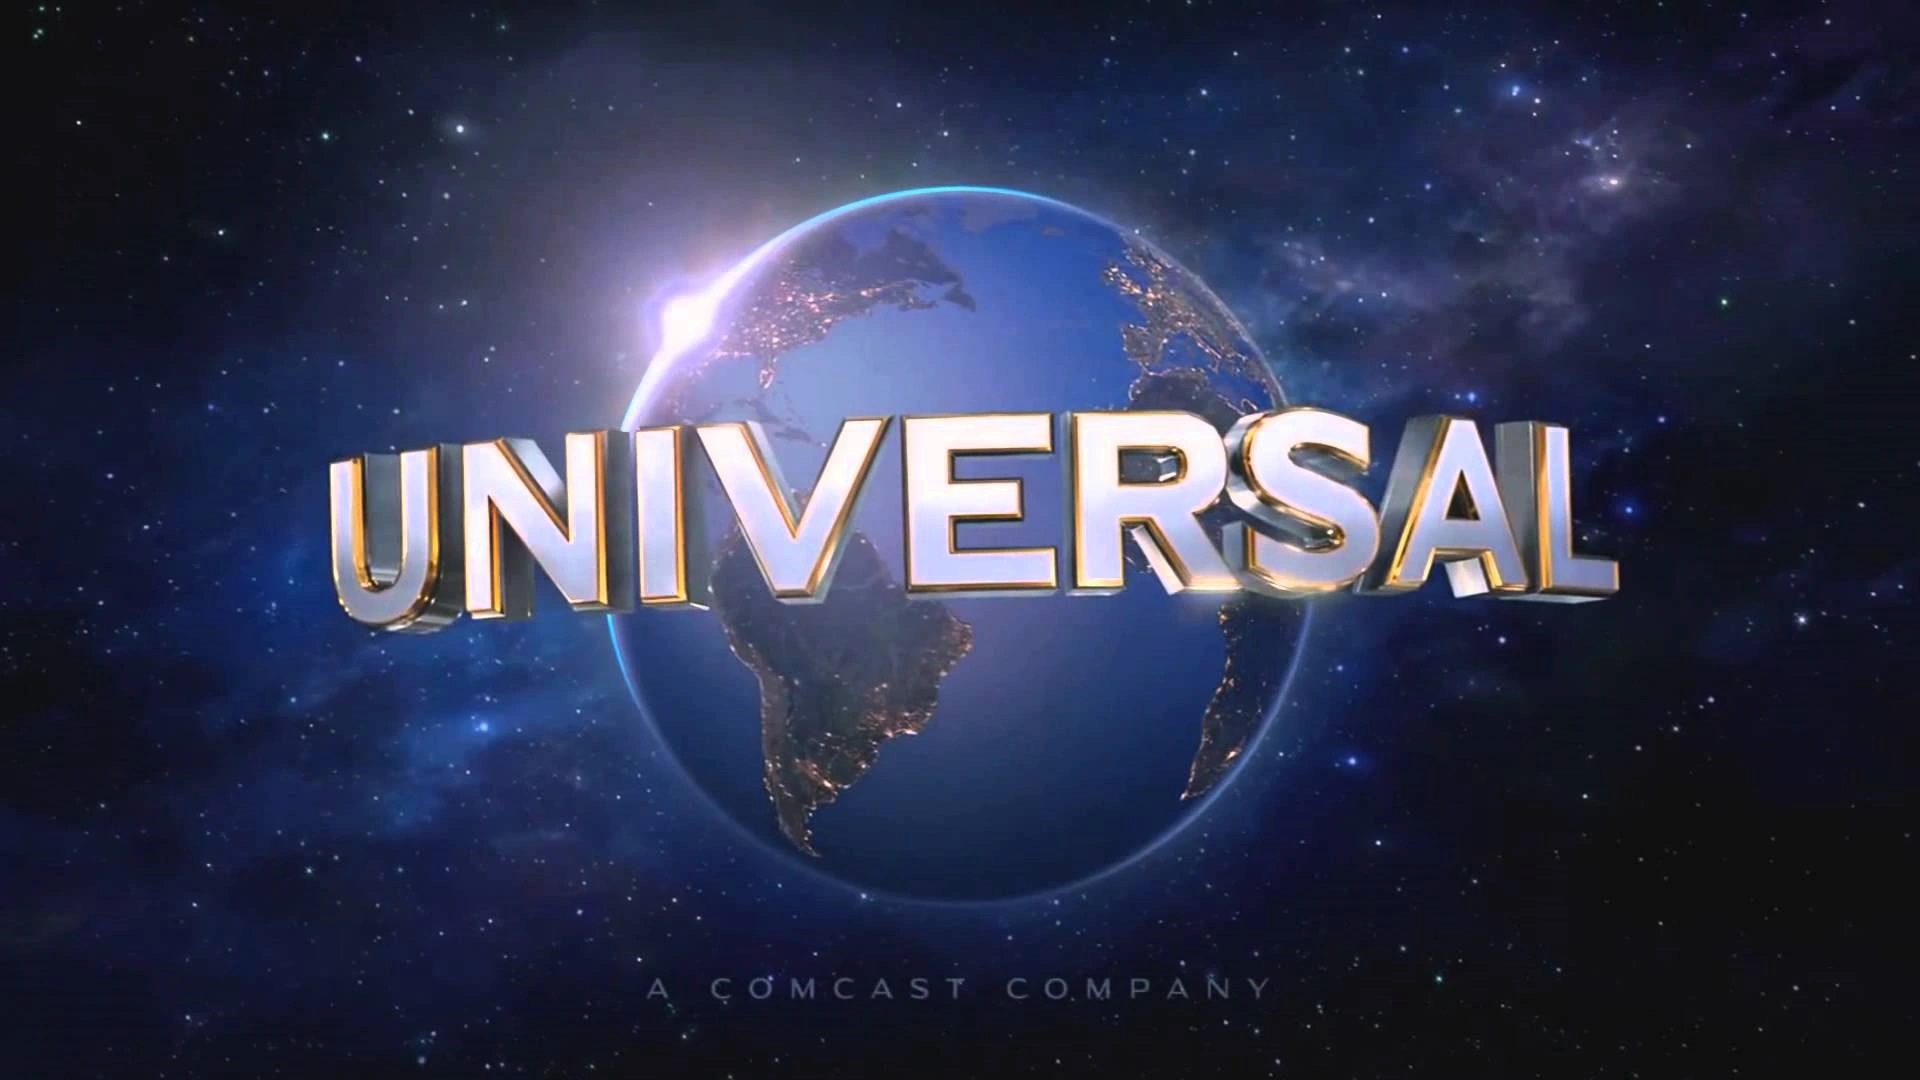 The End: Universal Pictures finalmente abandona el mercado ruso y cierra su oficina